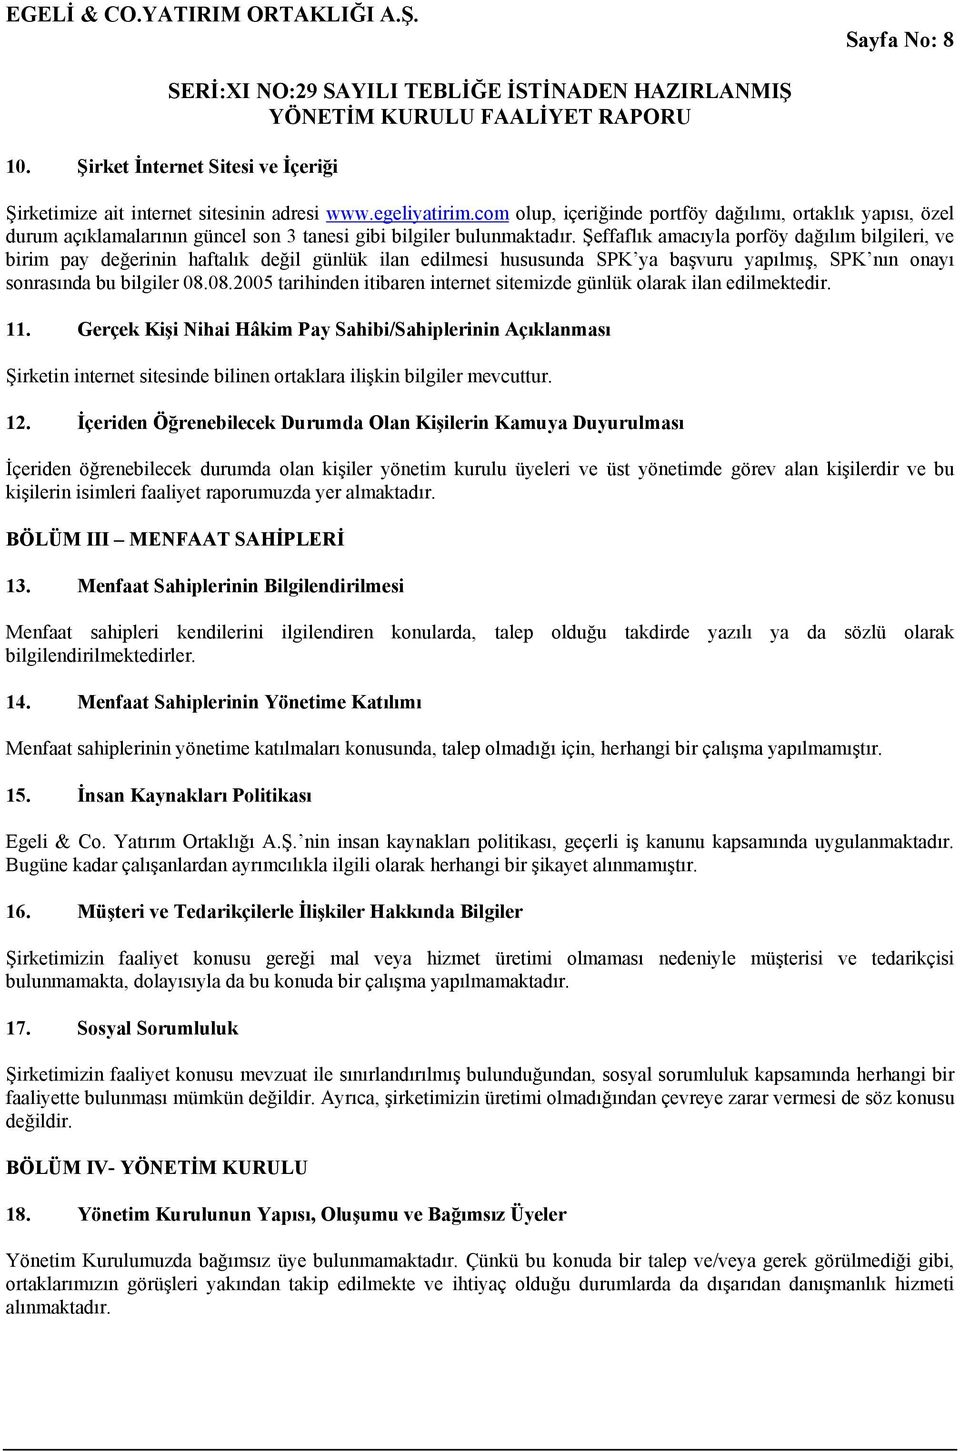 Şeffaflık amacıyla porföy dağılım bilgileri, ve birim pay değerinin haftalık değil günlük ilan edilmesi hususunda SPK ya başvuru yapılmış, SPK nın onayı sonrasında bu bilgiler 08.